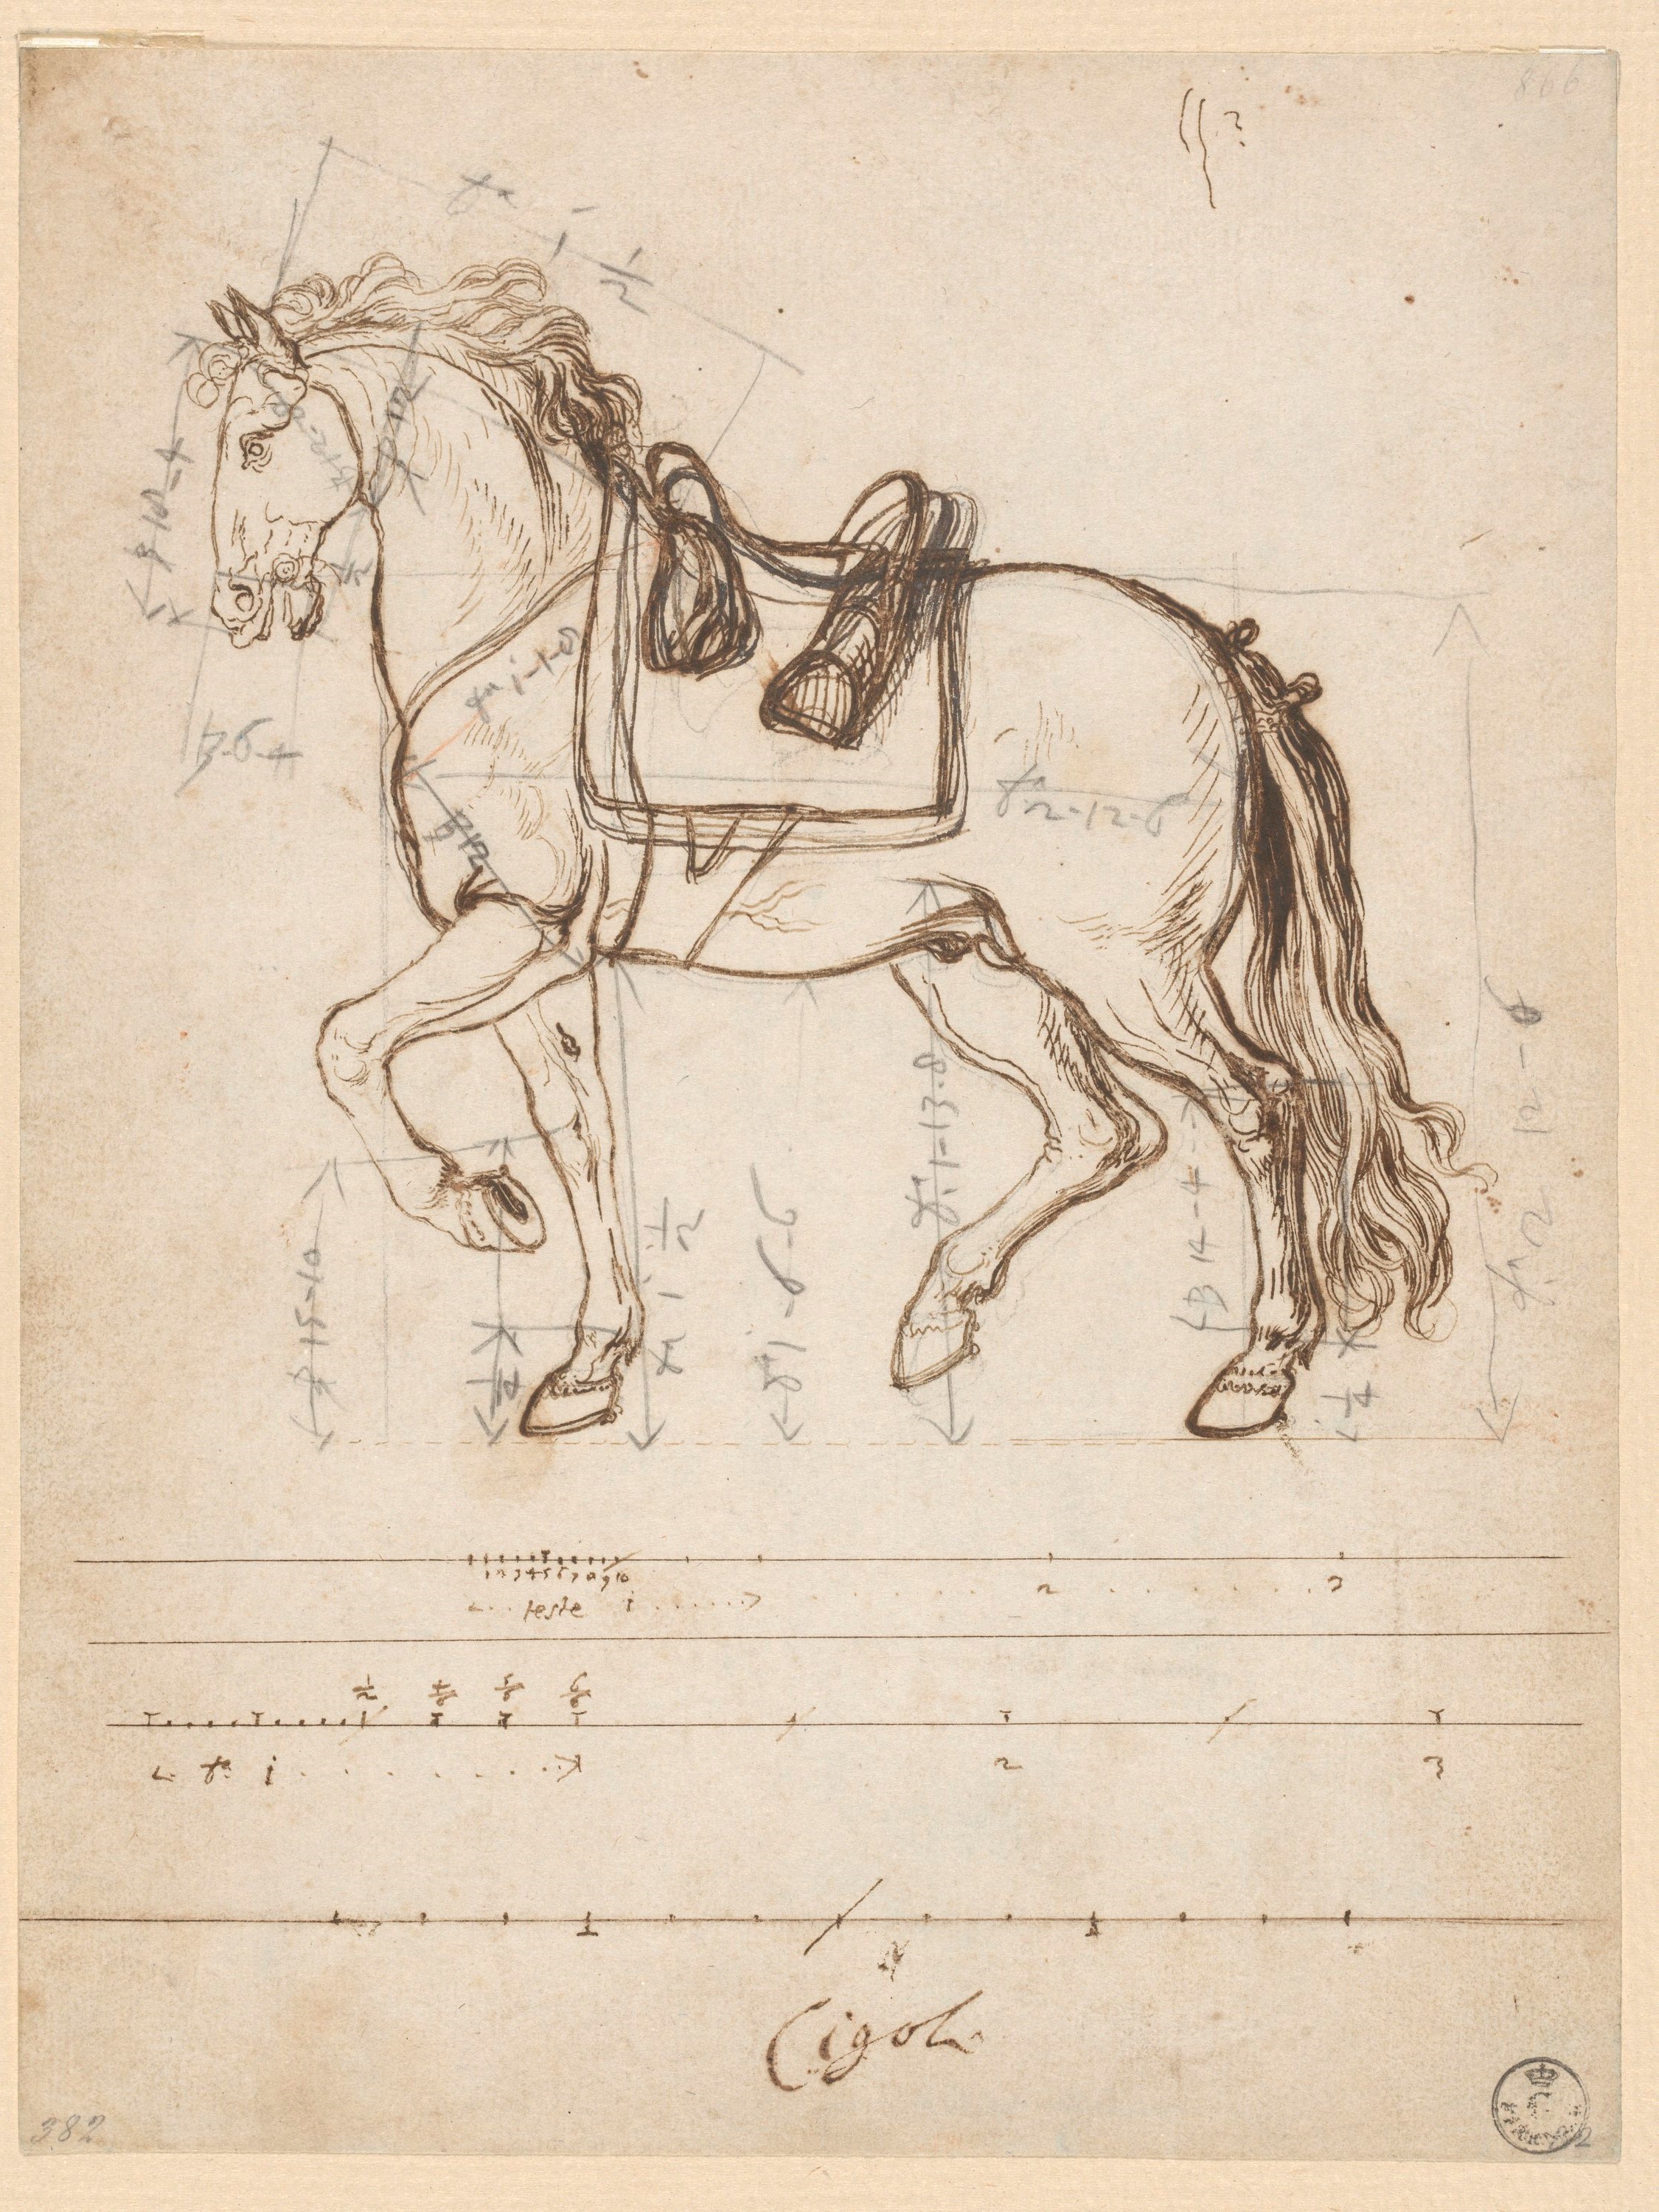 (r.) Cavallo sellato con varie numerazioni, (v.) Cavallo visto di fronte (disegno) di Cardi Ludovico detto Cigoli (XVII)